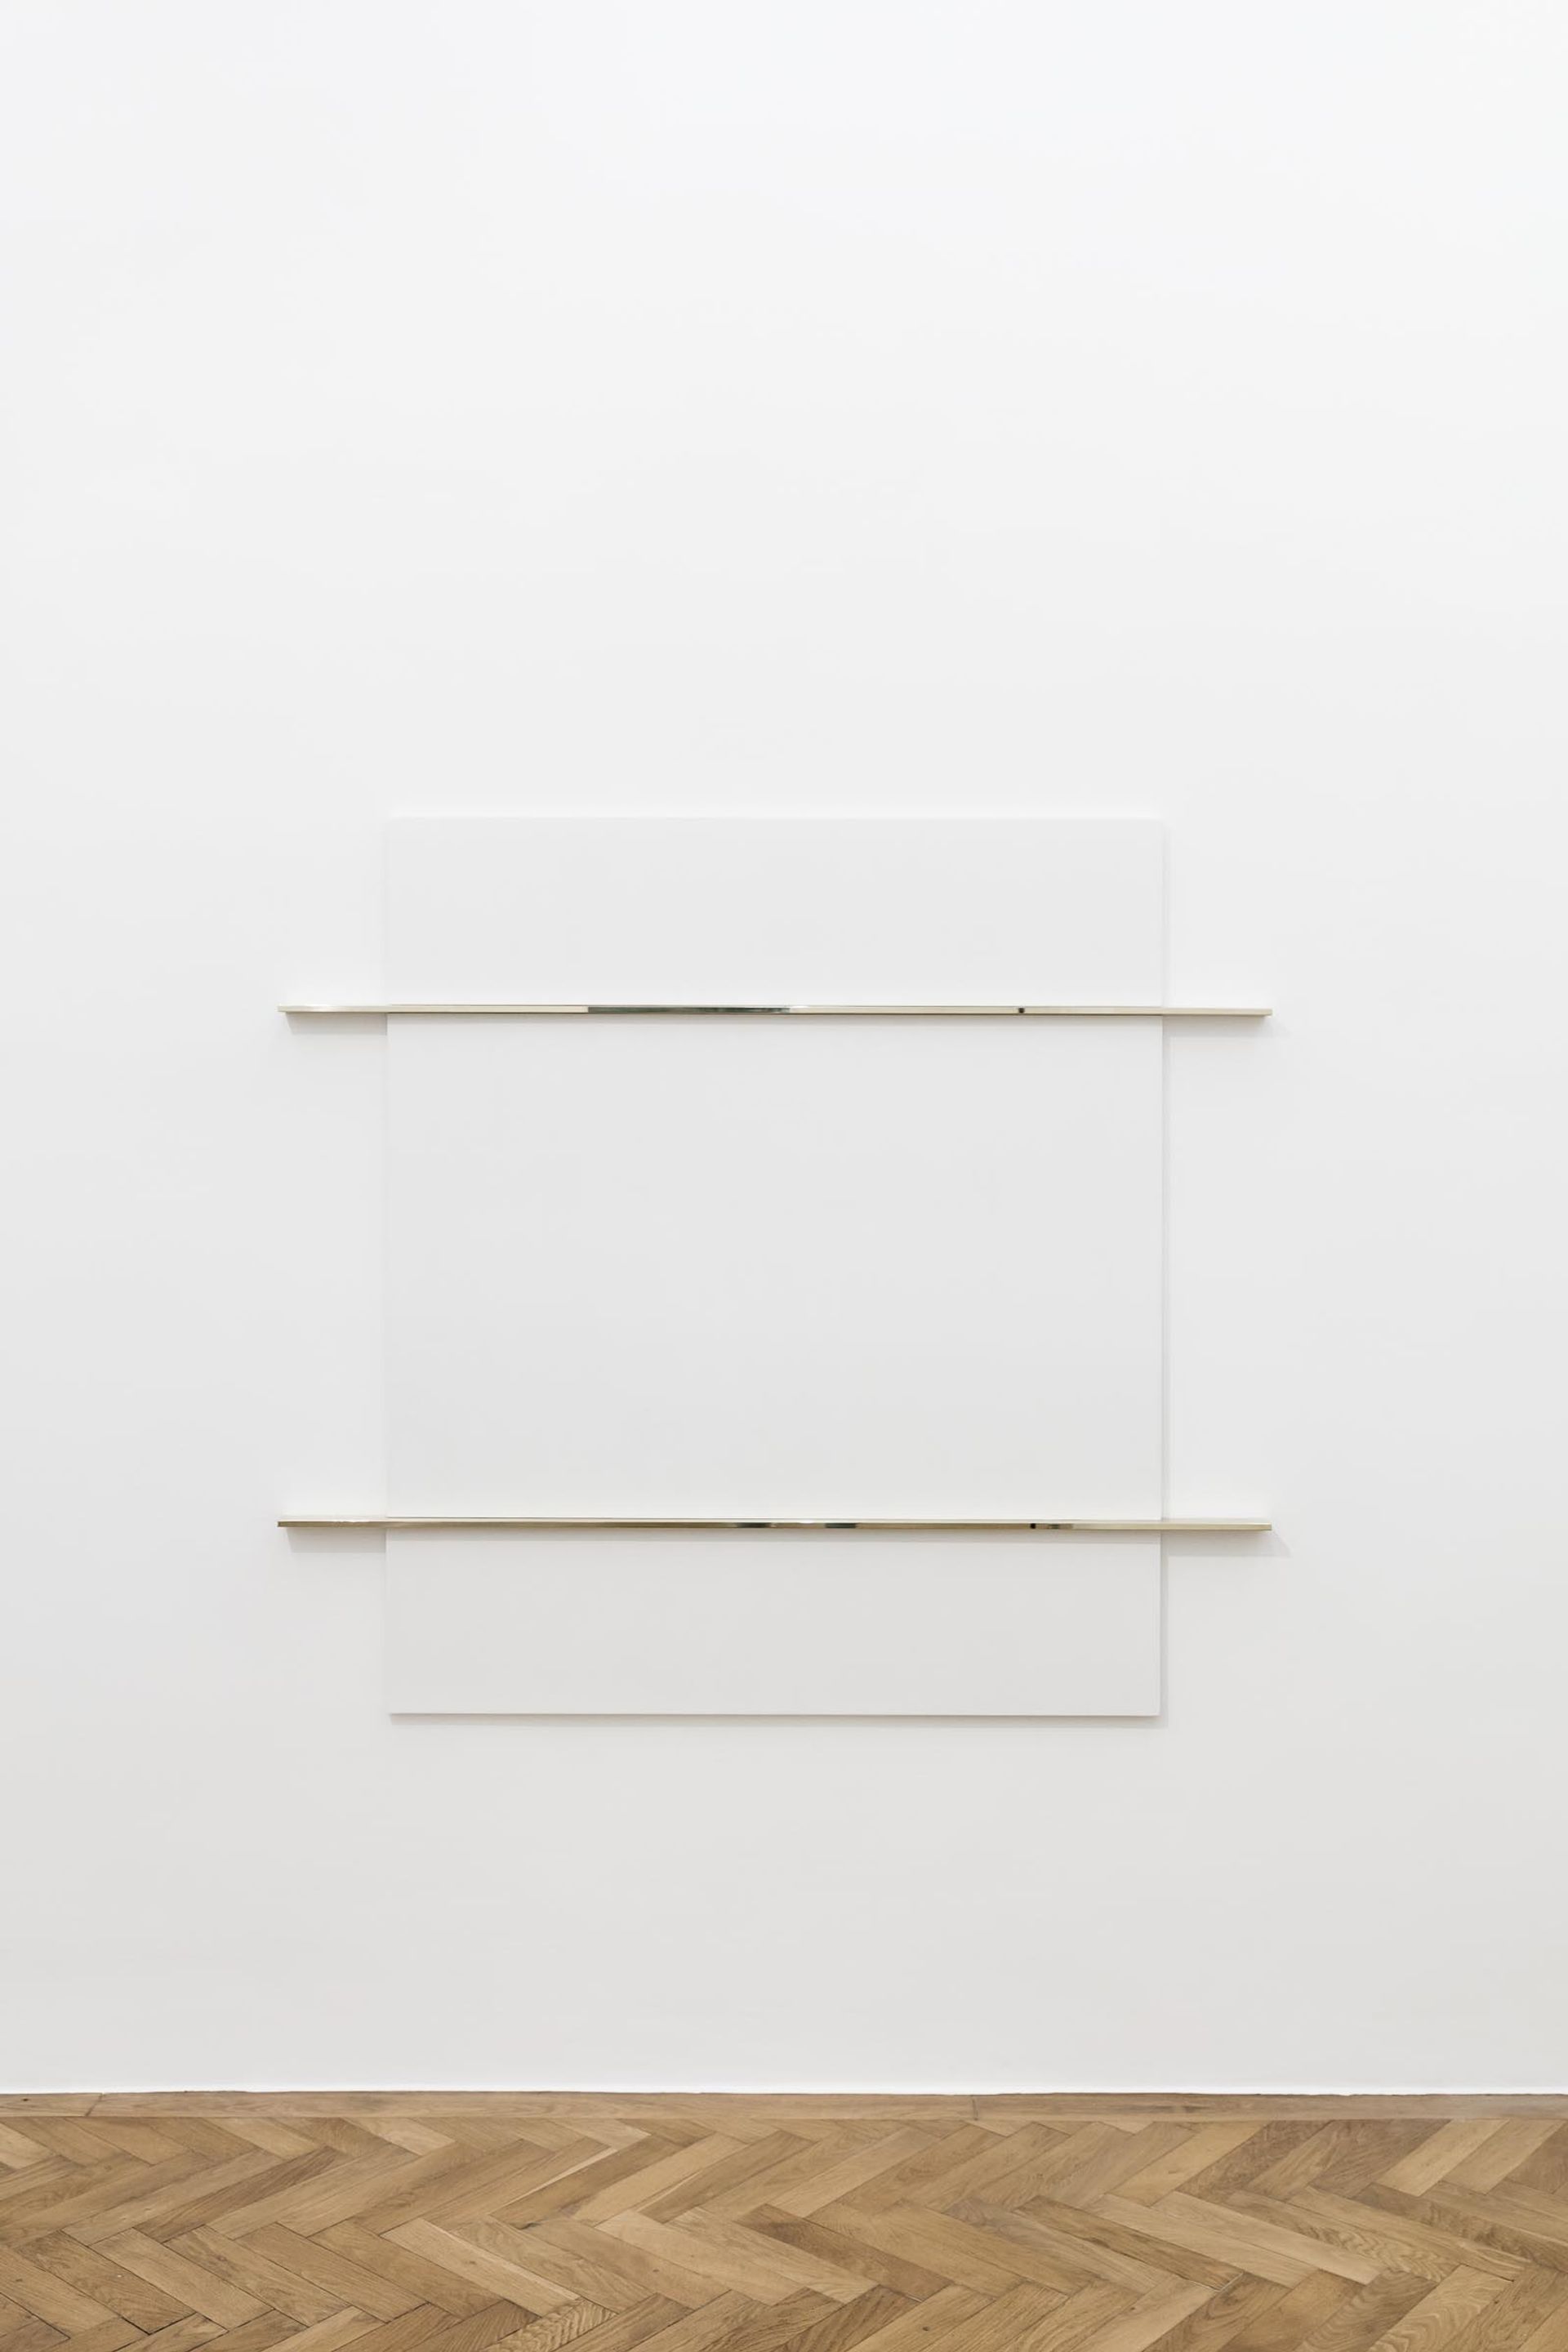 Haris Epaminonda, N.I, 2017, white pastellone, brass, 161,5 × 172 x 5 cm